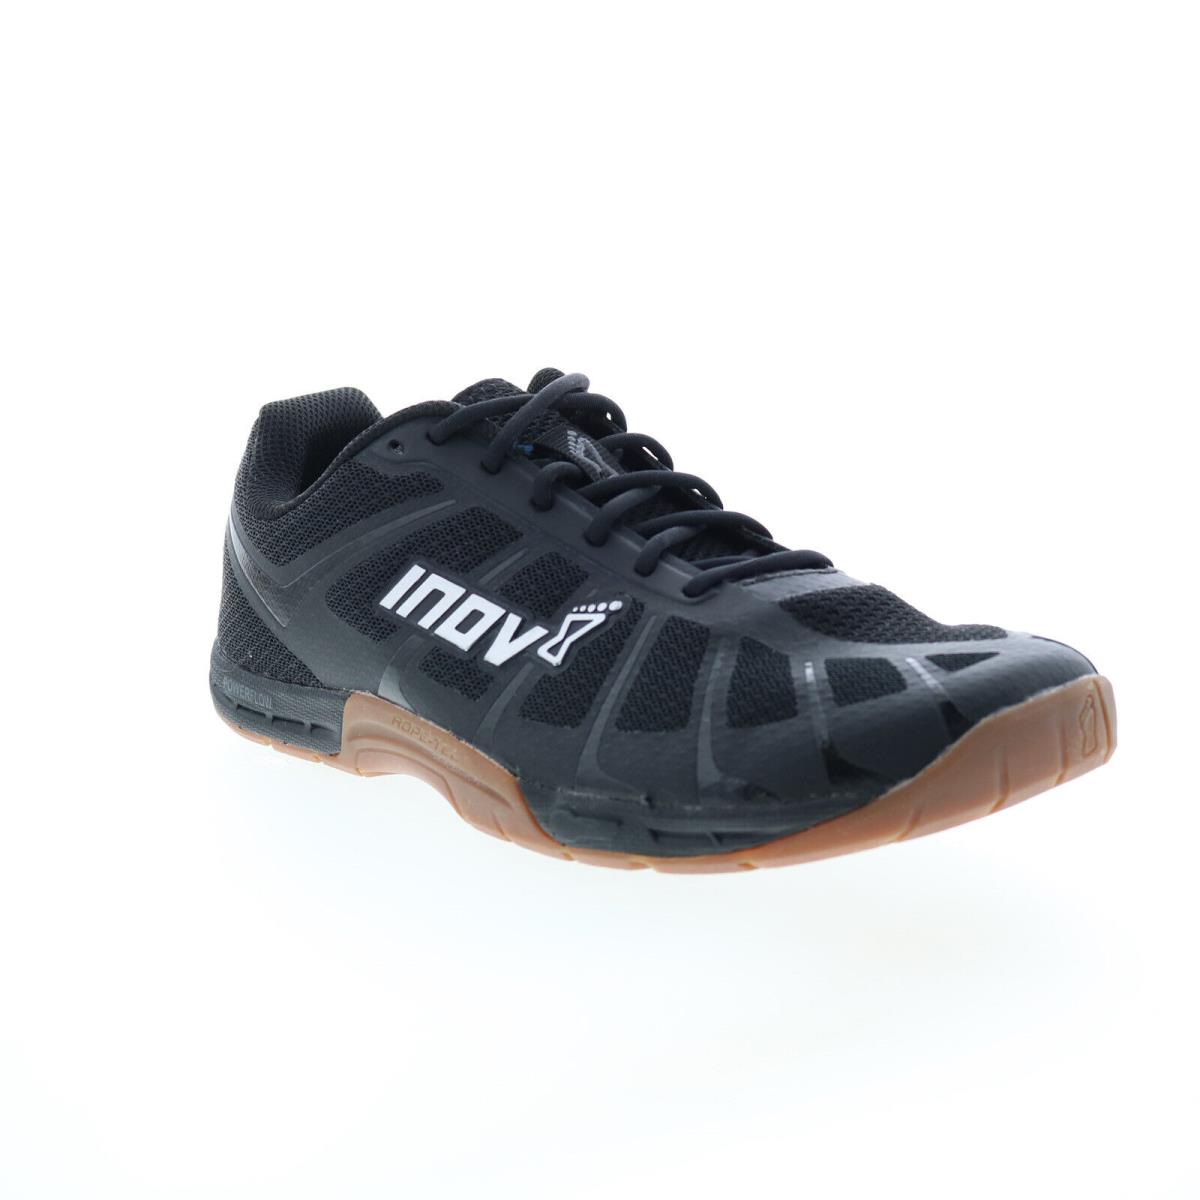 Inov-8 F-lite 235 V3 000868-BKGU Womens Black Athletic Cross Training Shoes 9